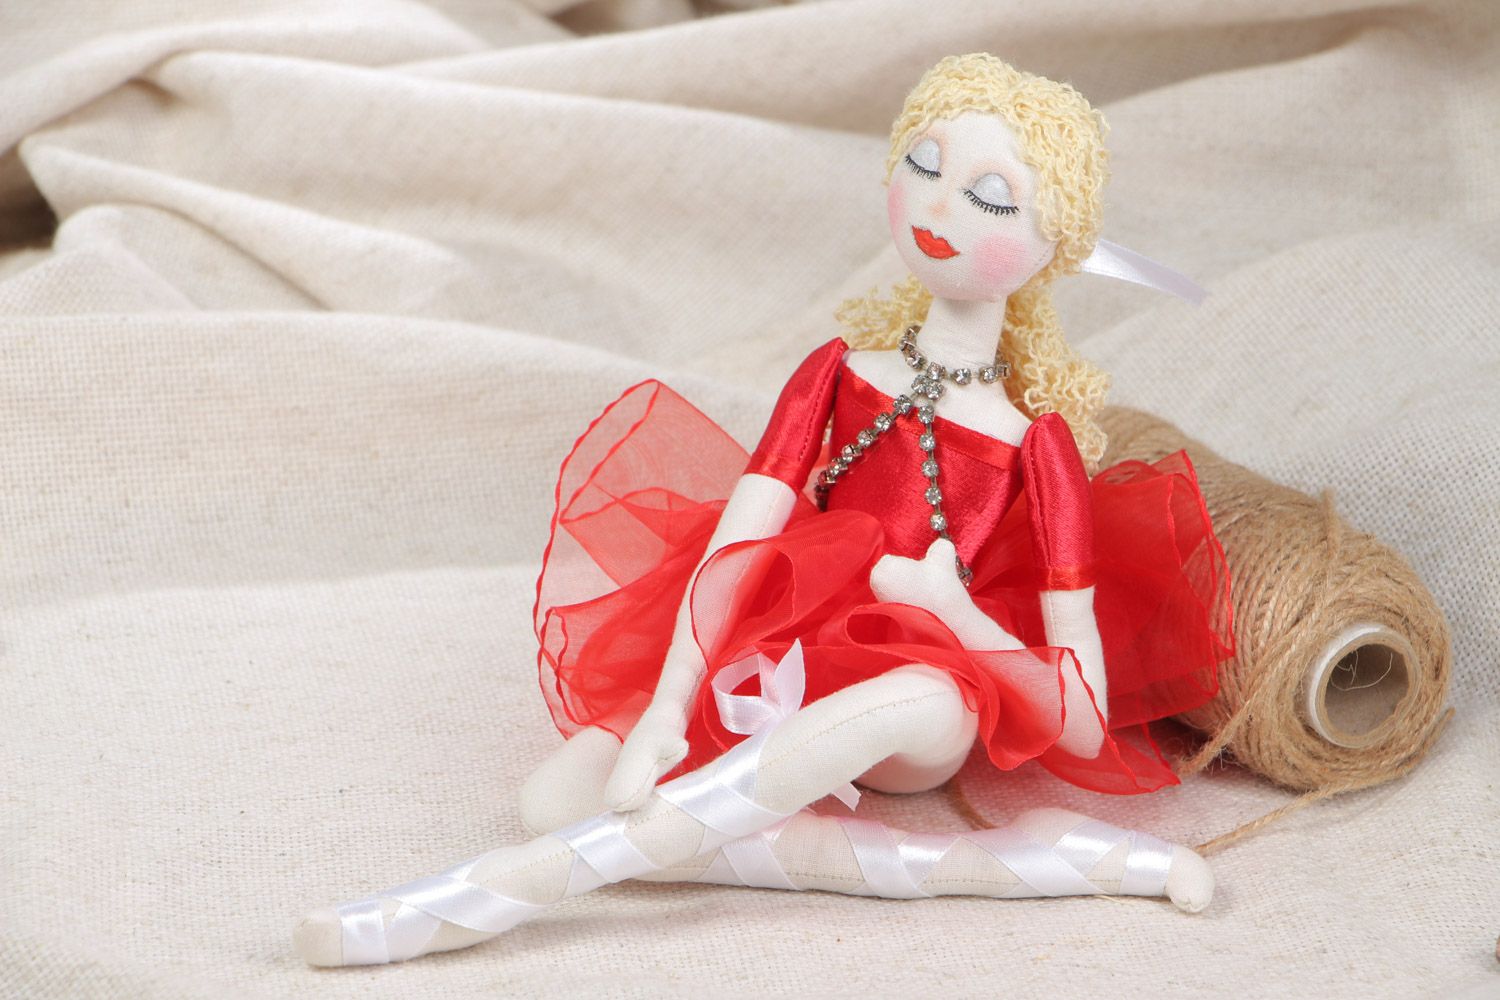 Мягкая игрушка в виде балерины ручной работы из хлопка и льна для девочки фото 1